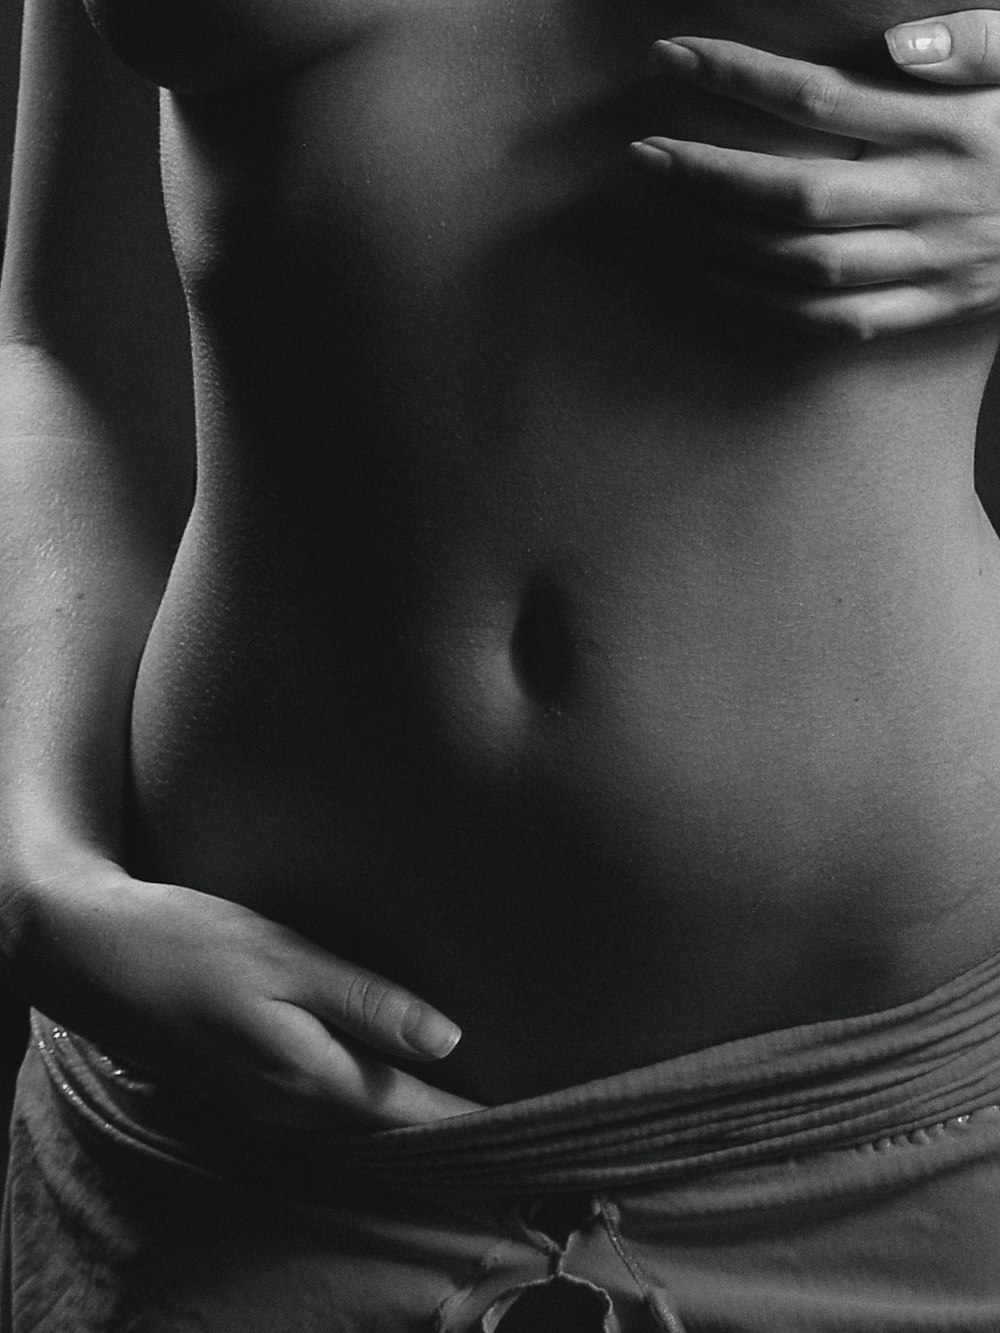 Una foto in bianco e nero dello stomaco di una donna